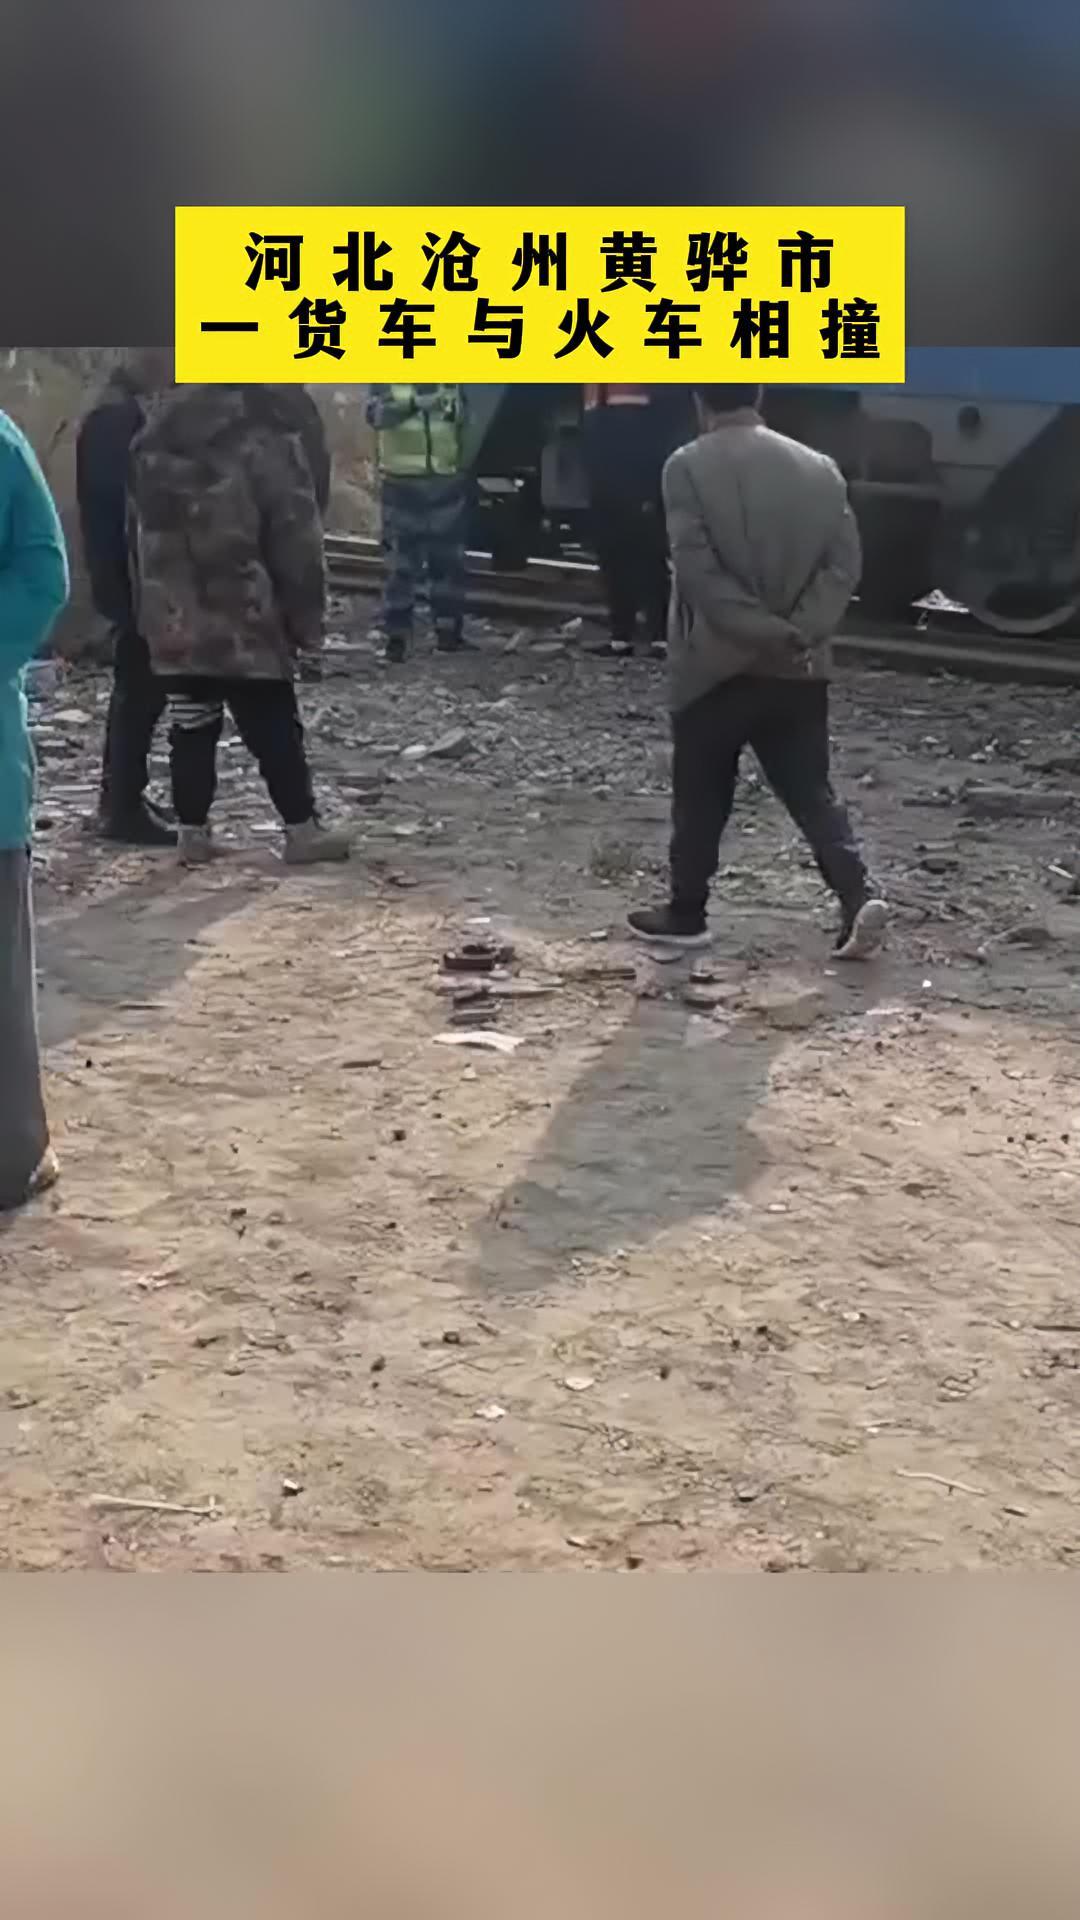 河北沧州黄骅市一货车与火车相撞 无人员伤亡 河北 火车 事故